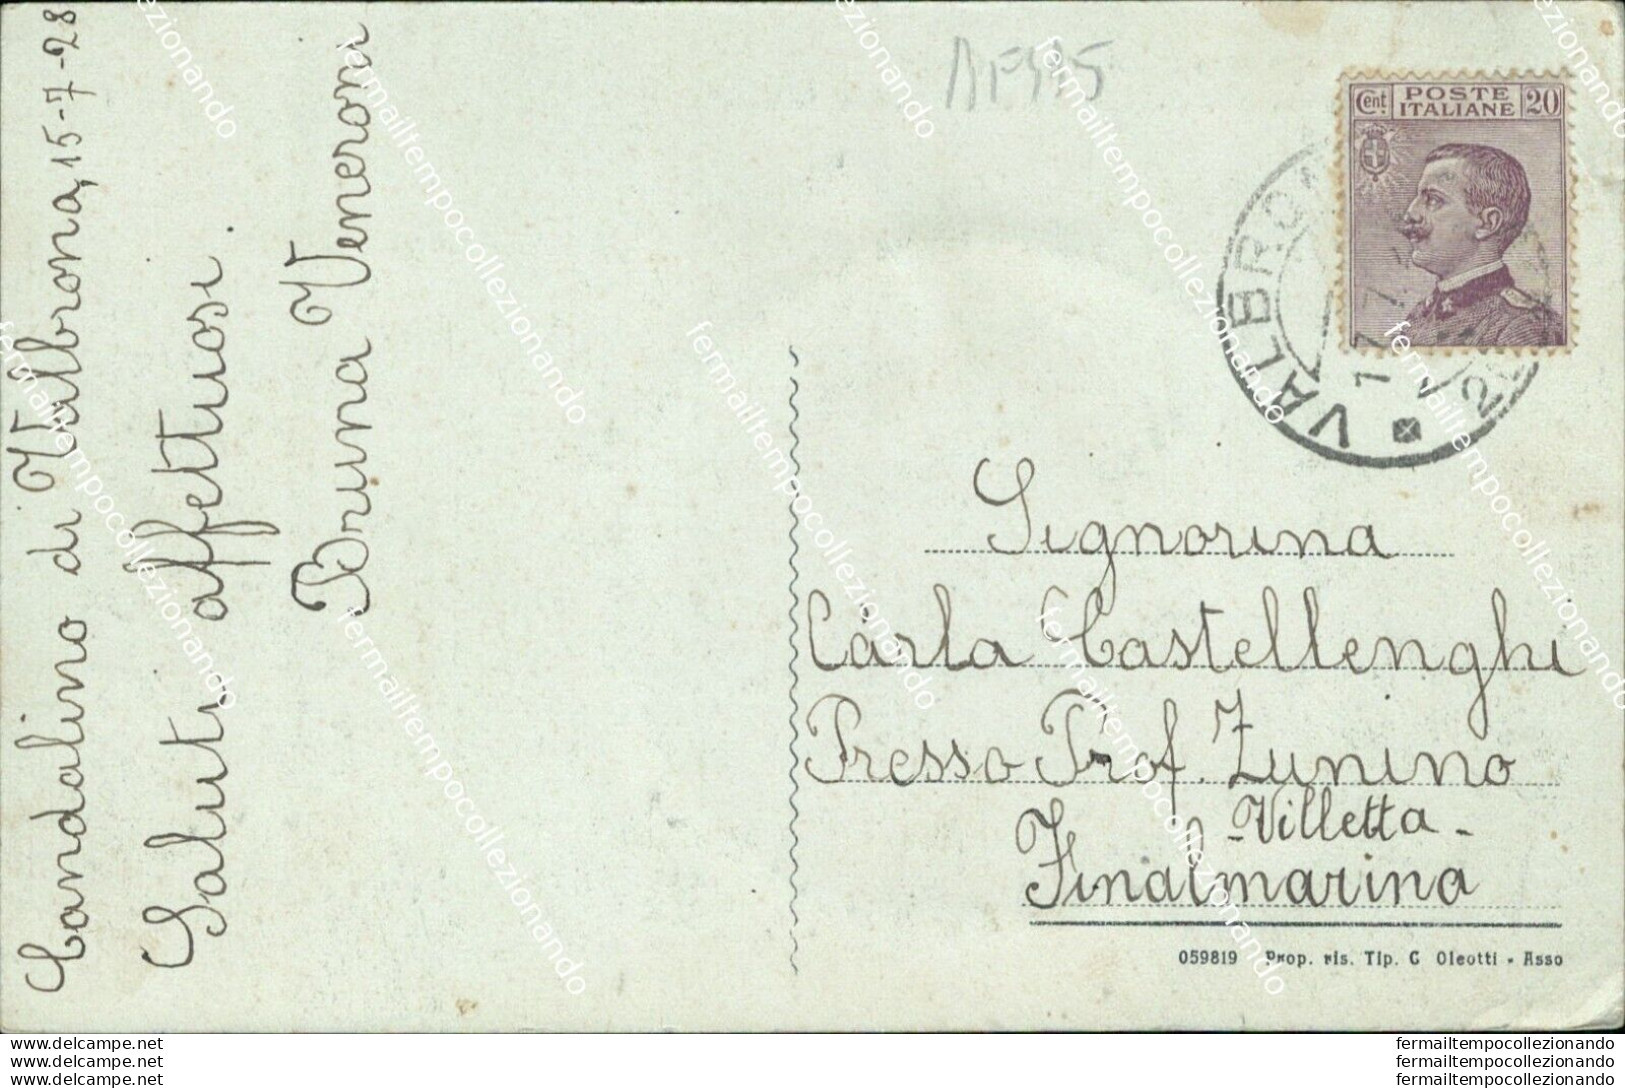 Bf495 Cartolina Valbrona Grotto S.giorgio 1928 Provincia Di Como - Como